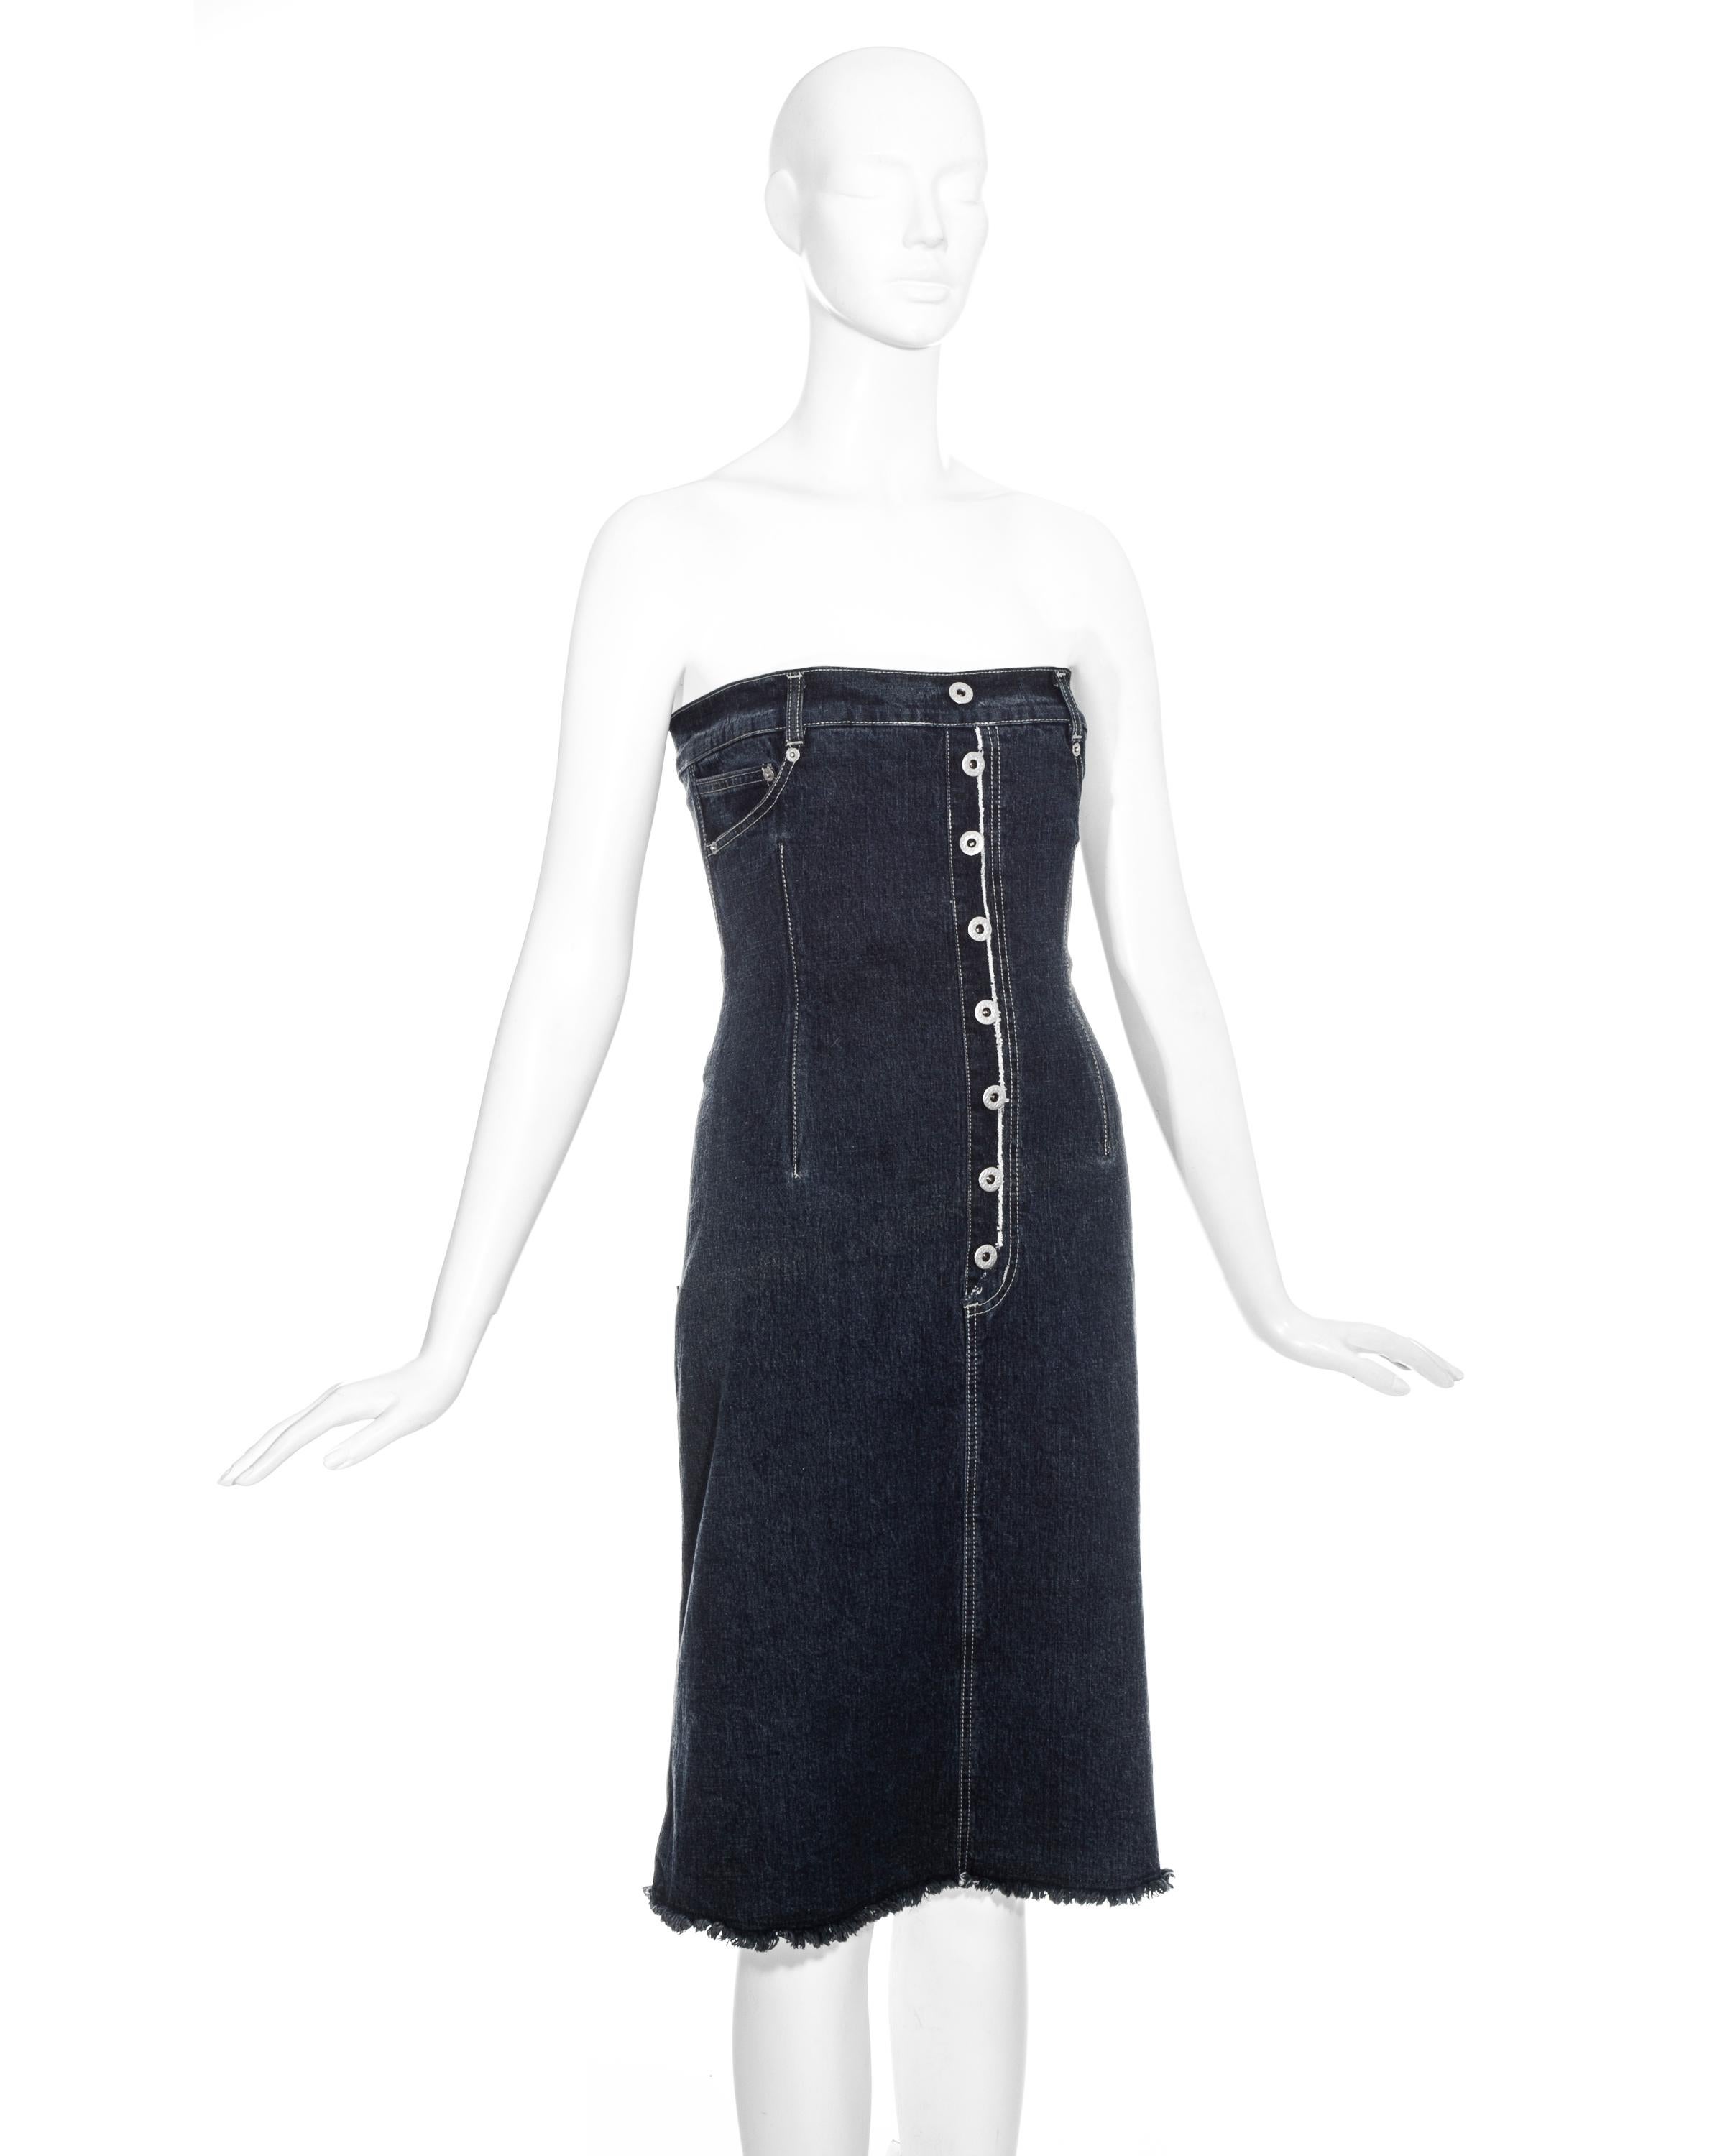 Robe corset en jean vintage Alexander McQueen.
L'une de ses premières collections, à l'époque où Alexander McQueen lui-même était le designer et avait une ligne de jeans. Cette pièce a été présentée à la London Fashion Week.
Corset à l'intérieur.